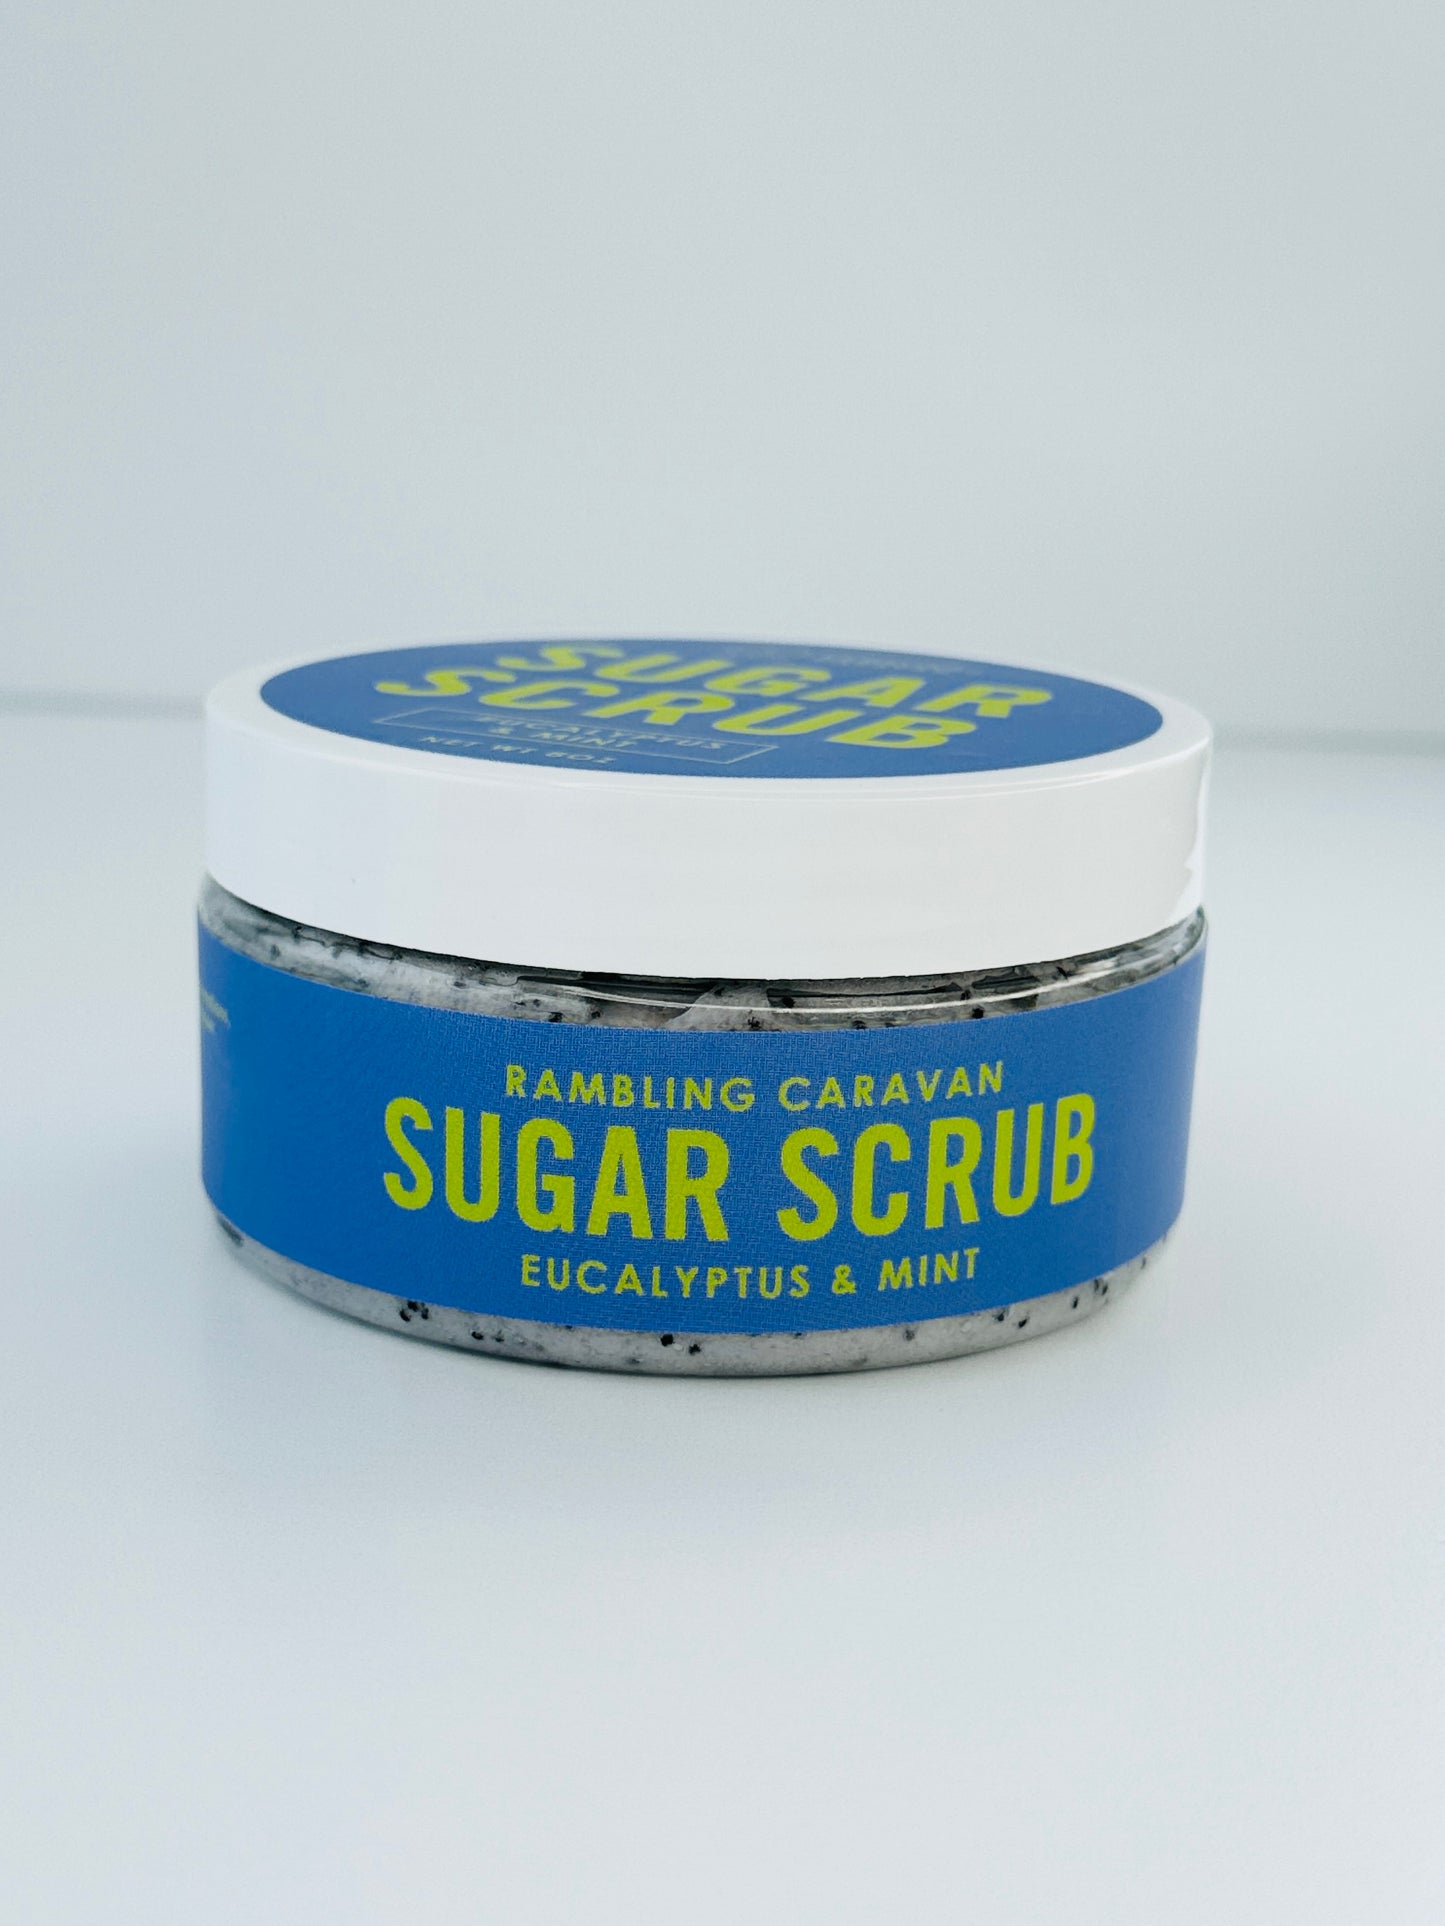 Sugar Scrub - Eucalyptus & Mint